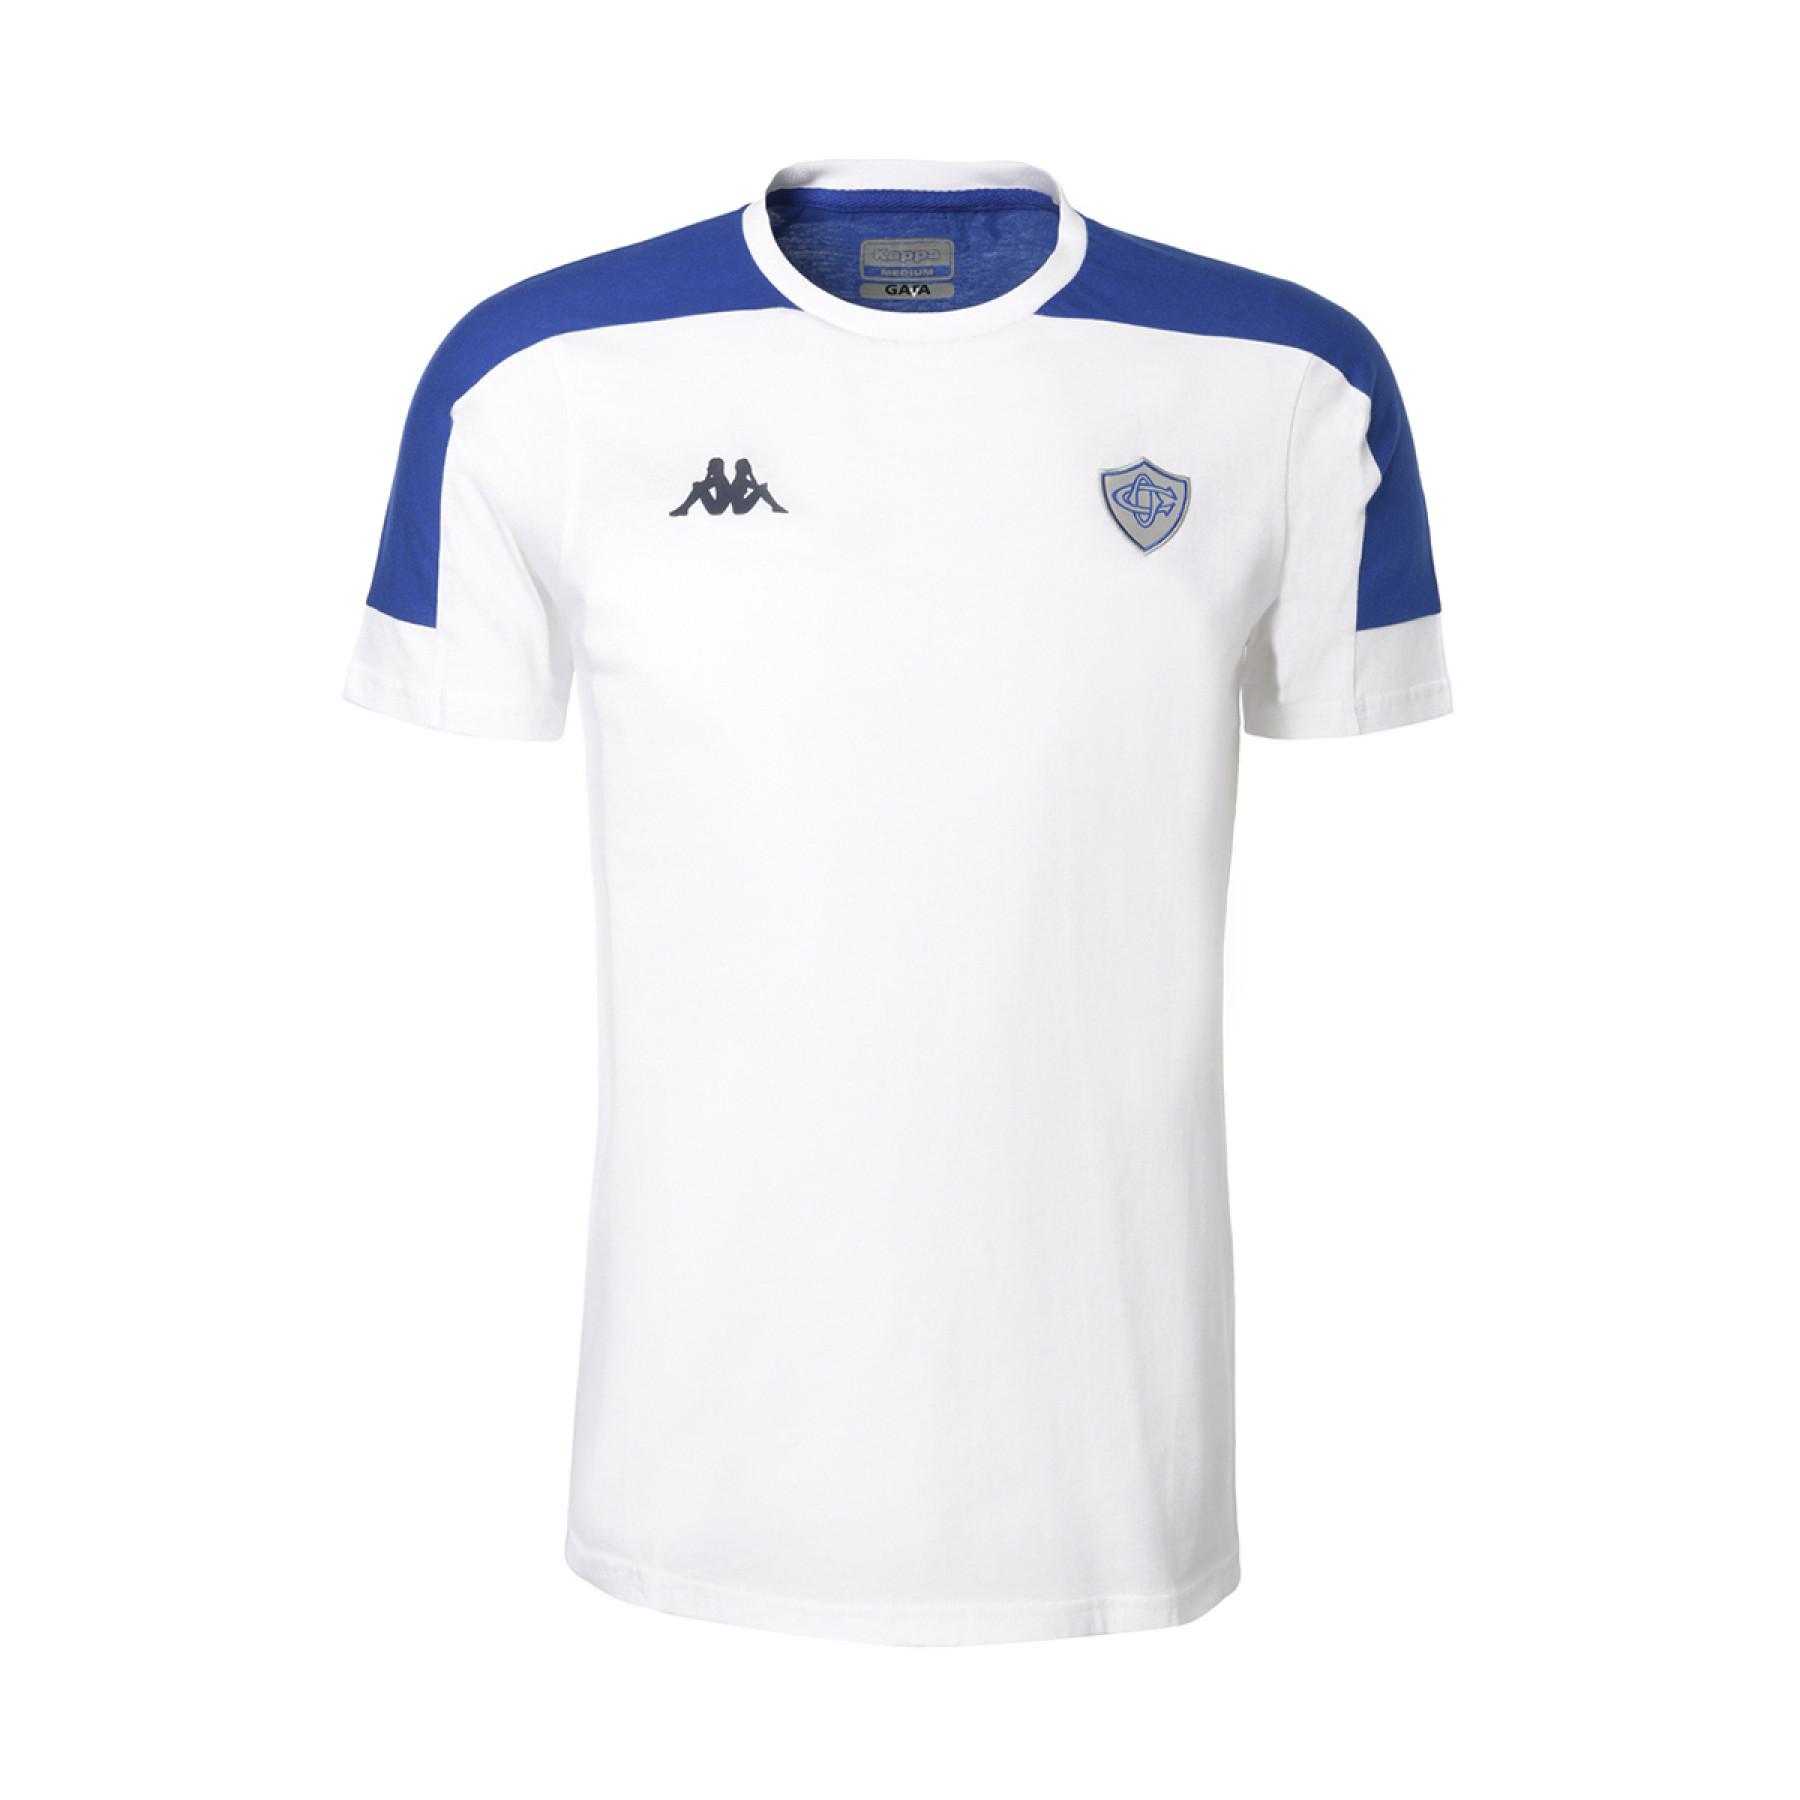 Koszulka dziecięca Castres Olympique 2020/21 algardi